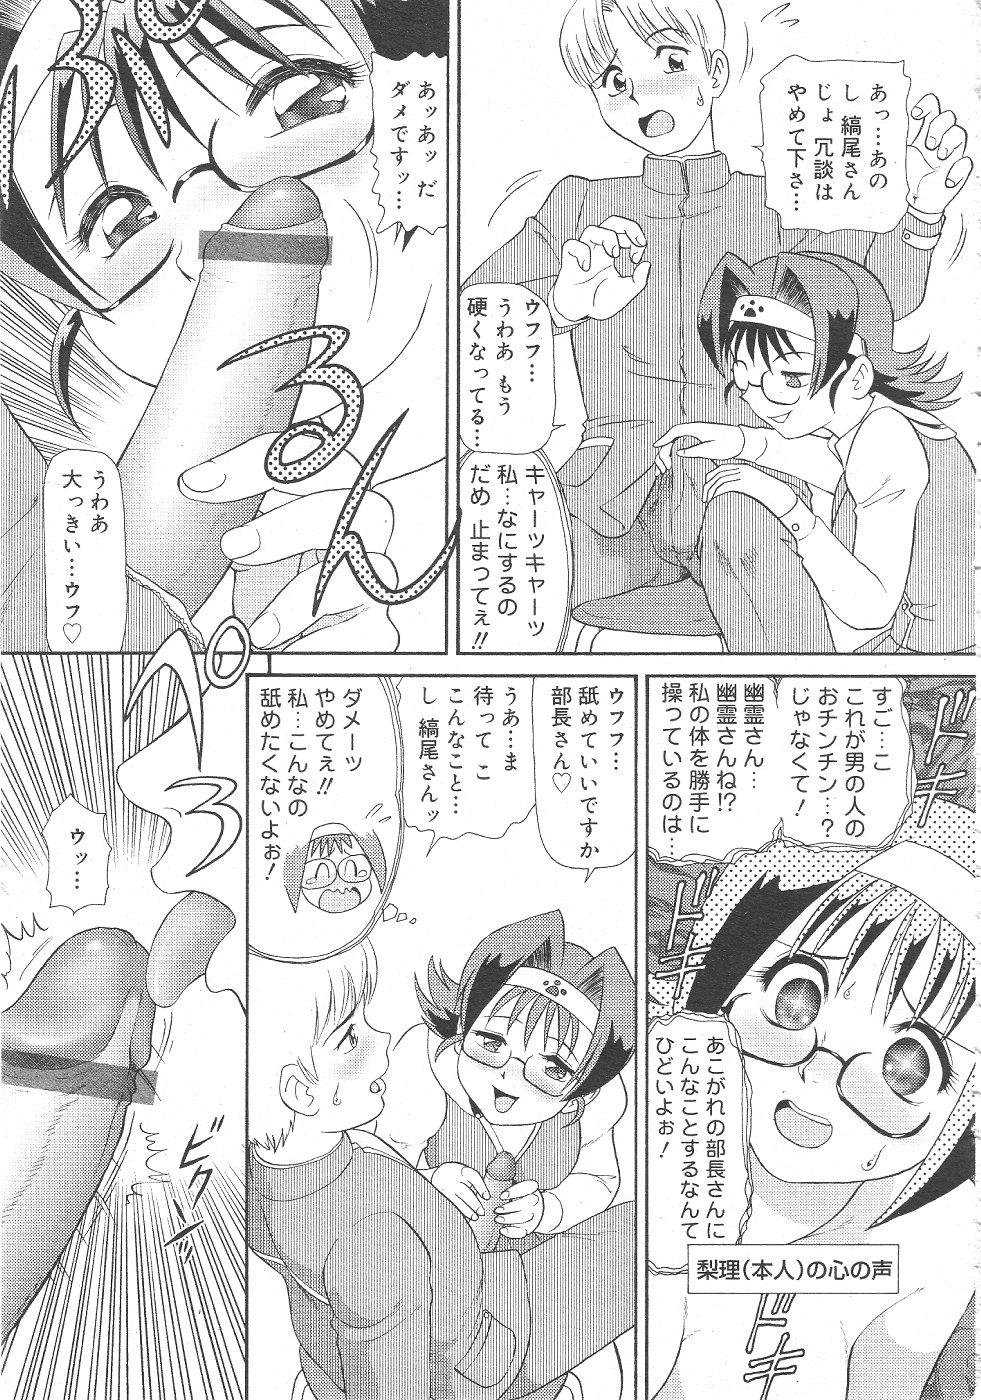 Gekkan Comic Muga 2004-06 Vol.10 376